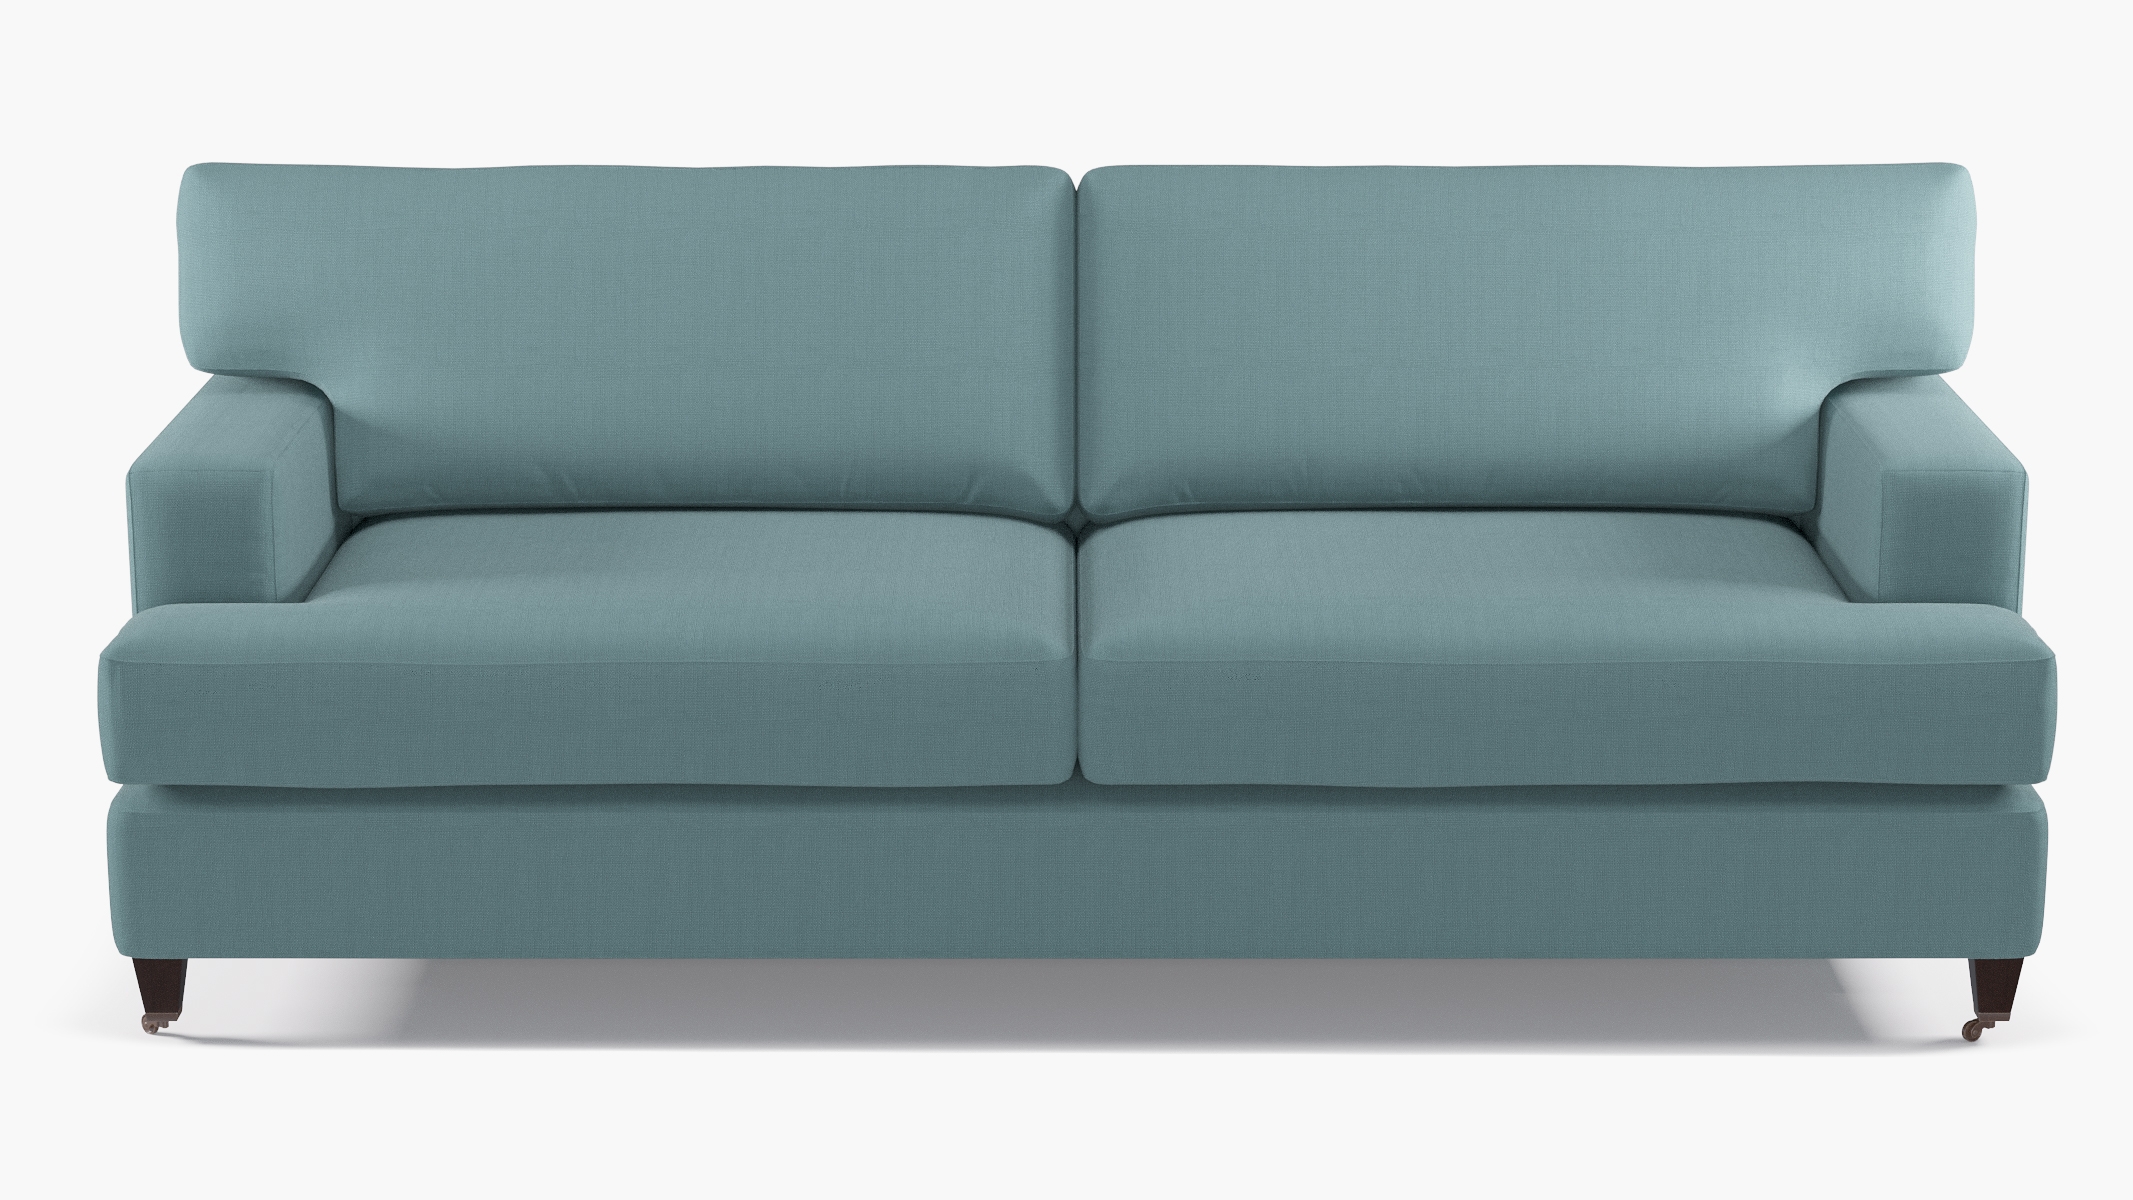 Classic Sofa, Seaglass Everyday Linen, Espresso - Image 0